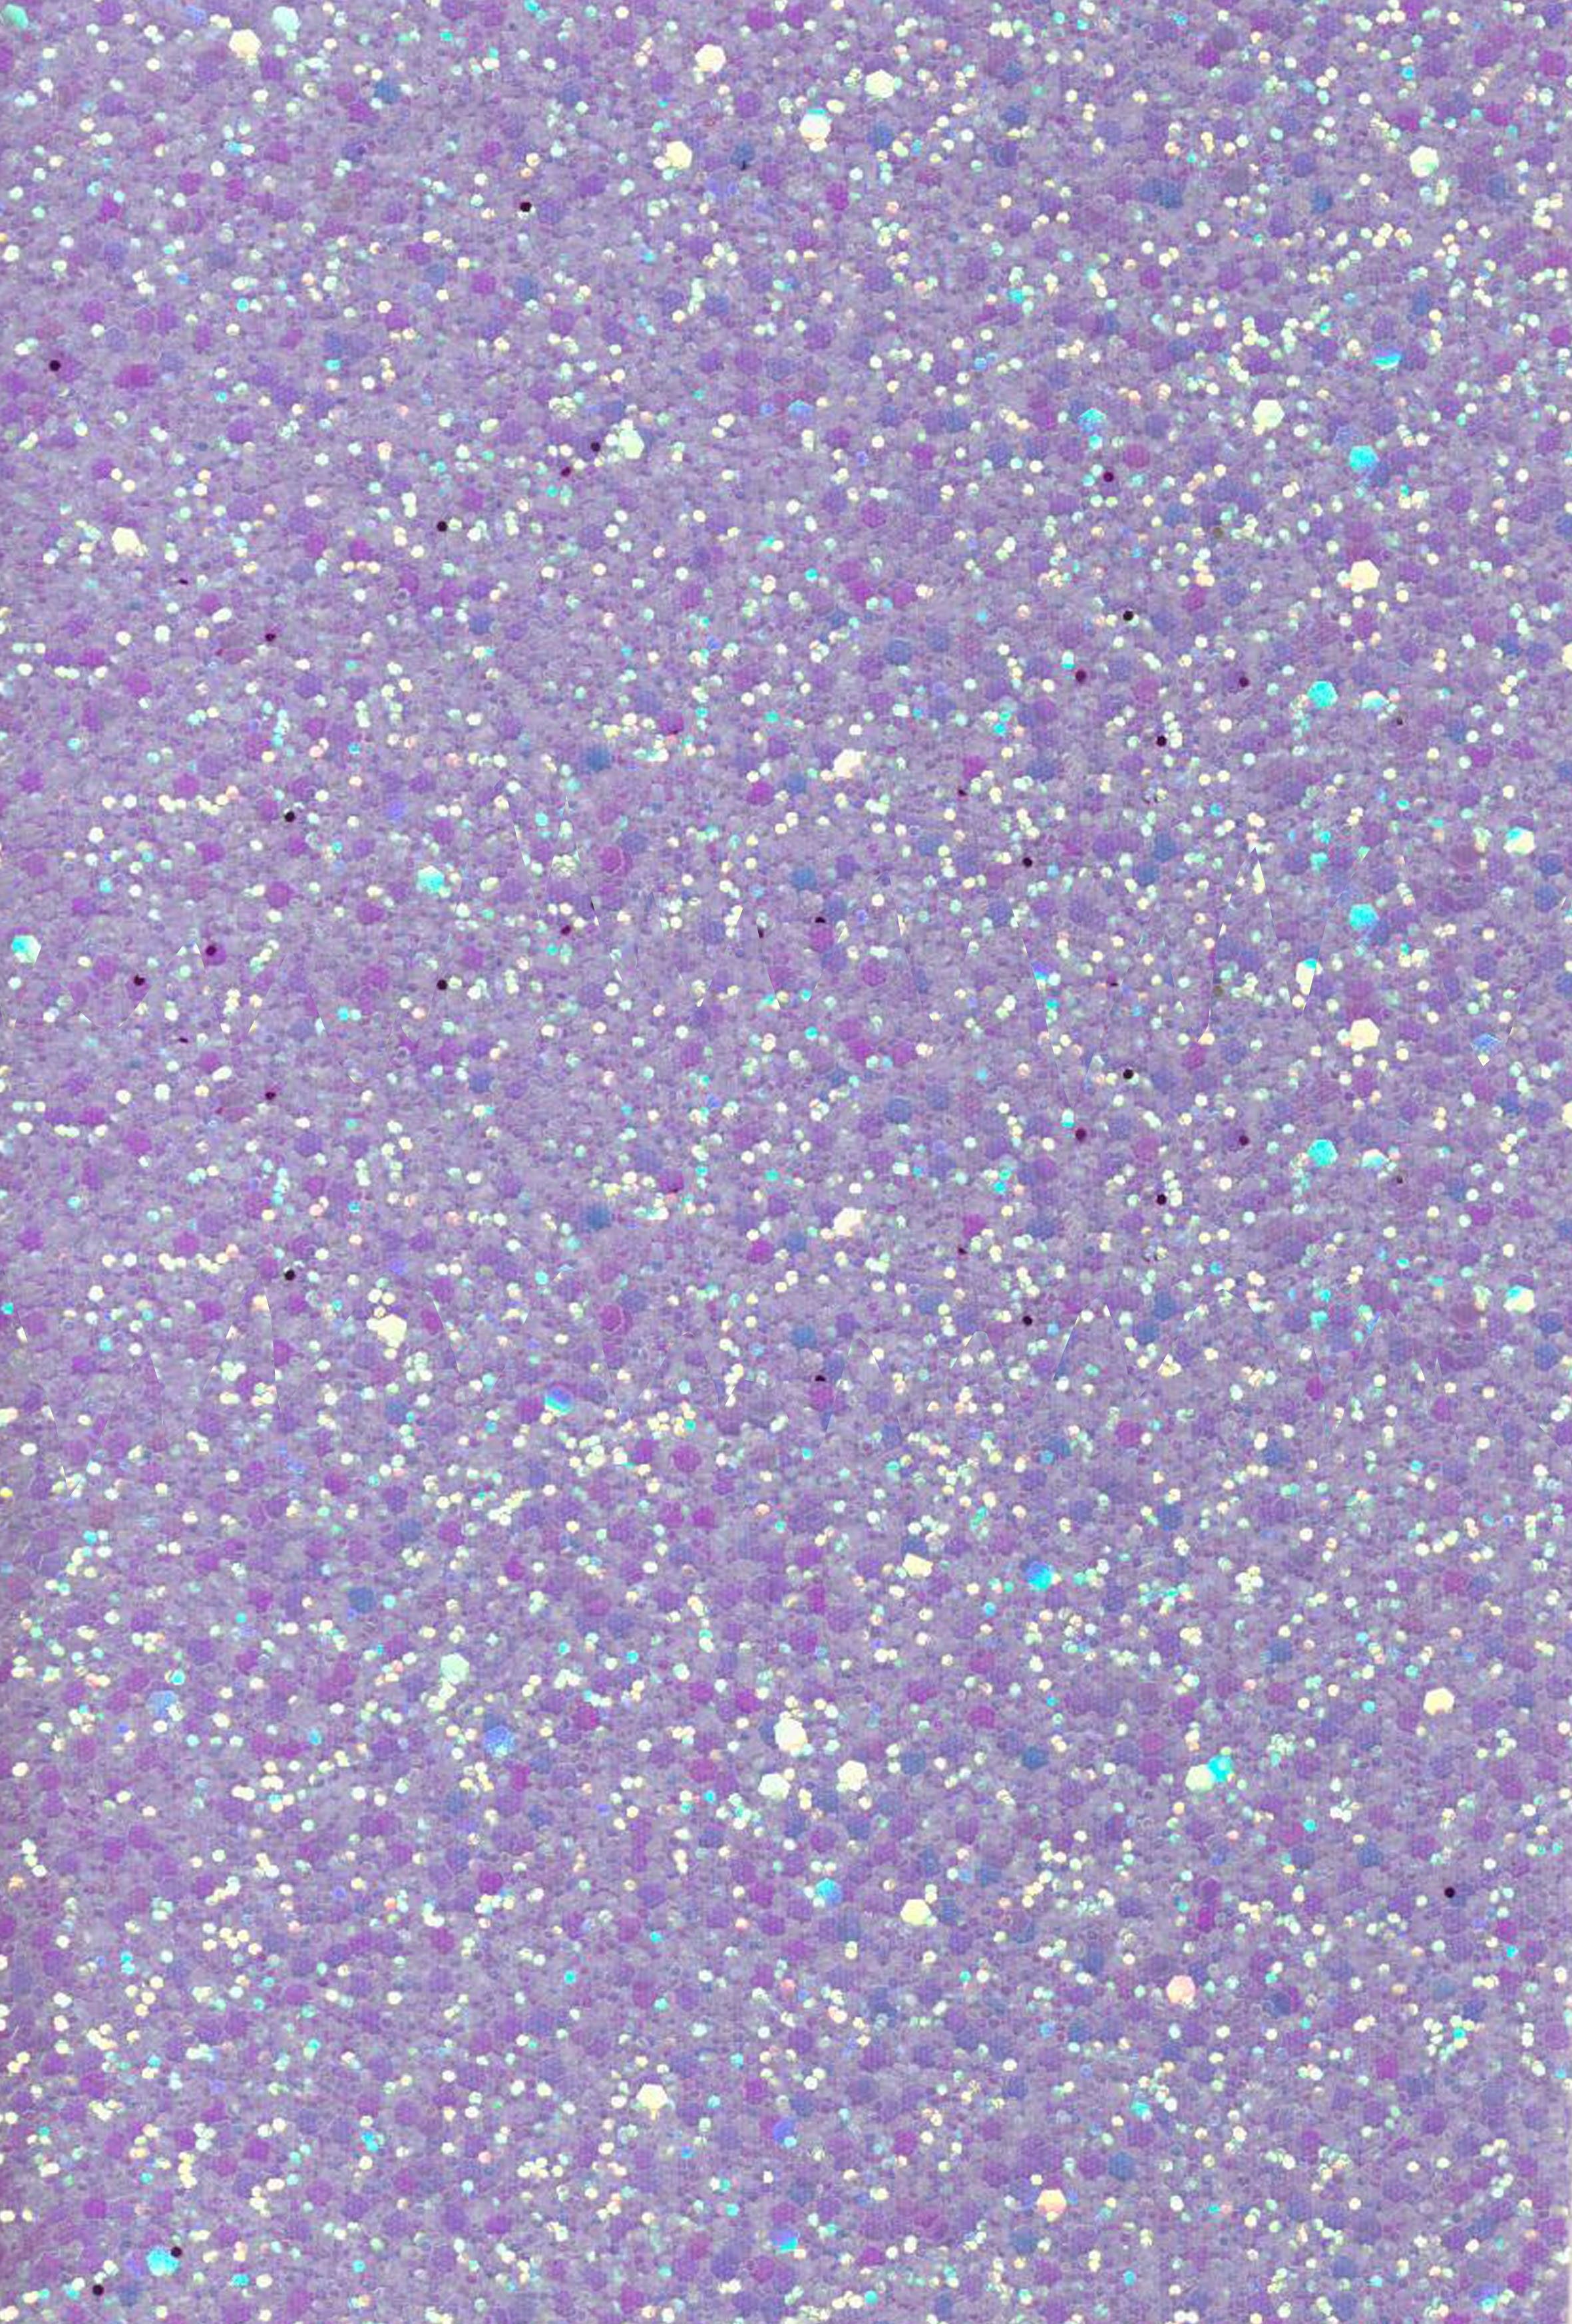 Lavender Glitter Wallpaper Free Lavender Glitter Background